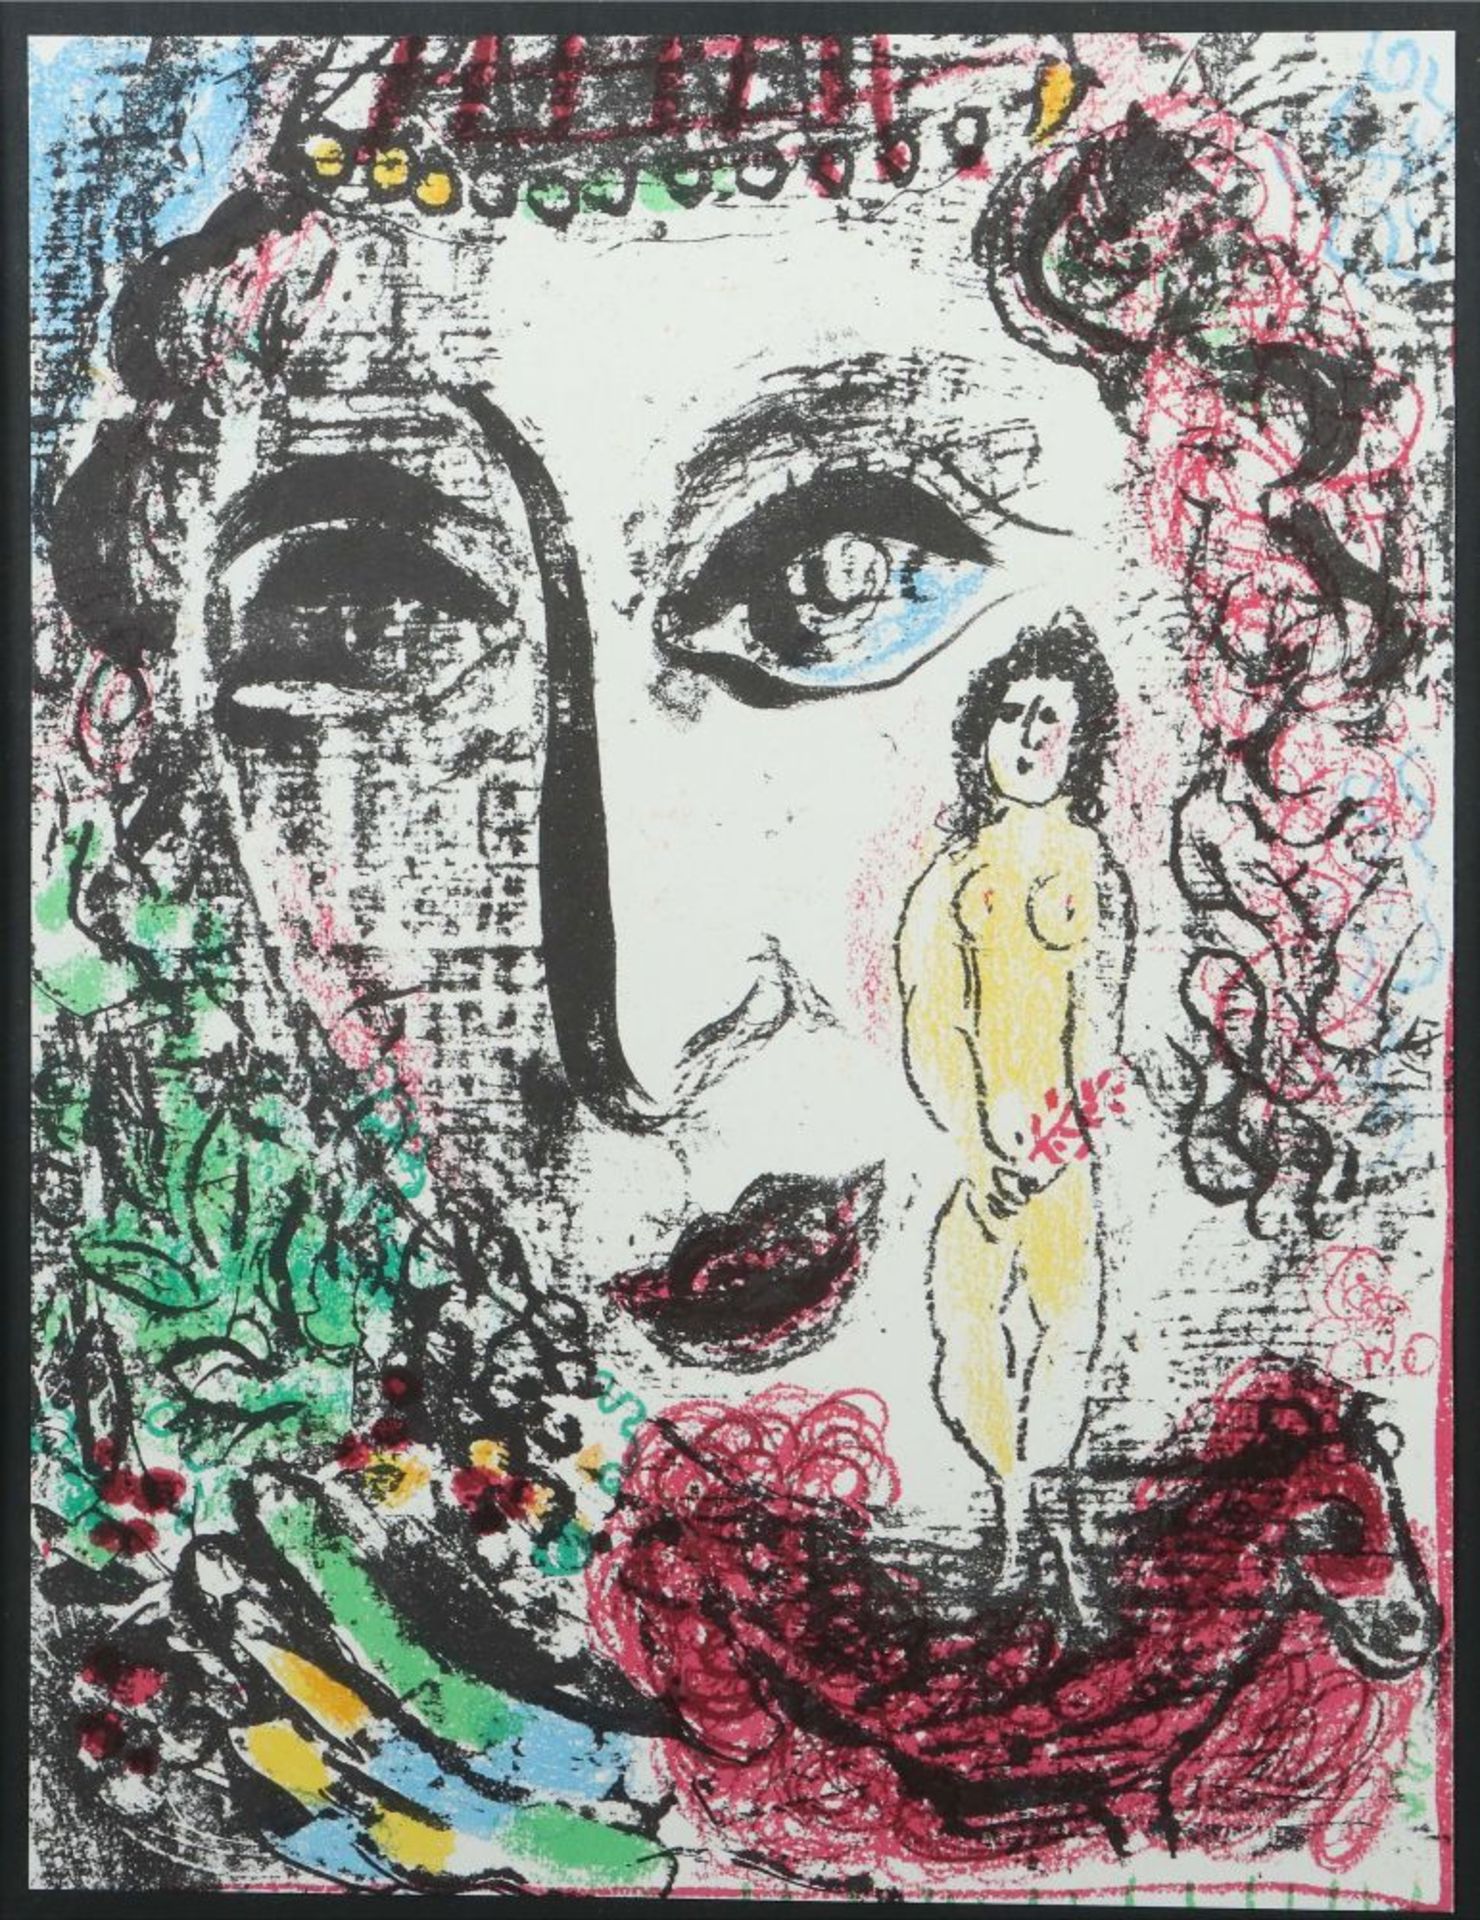 Chagall, Marc 1887 - 1985, russischer